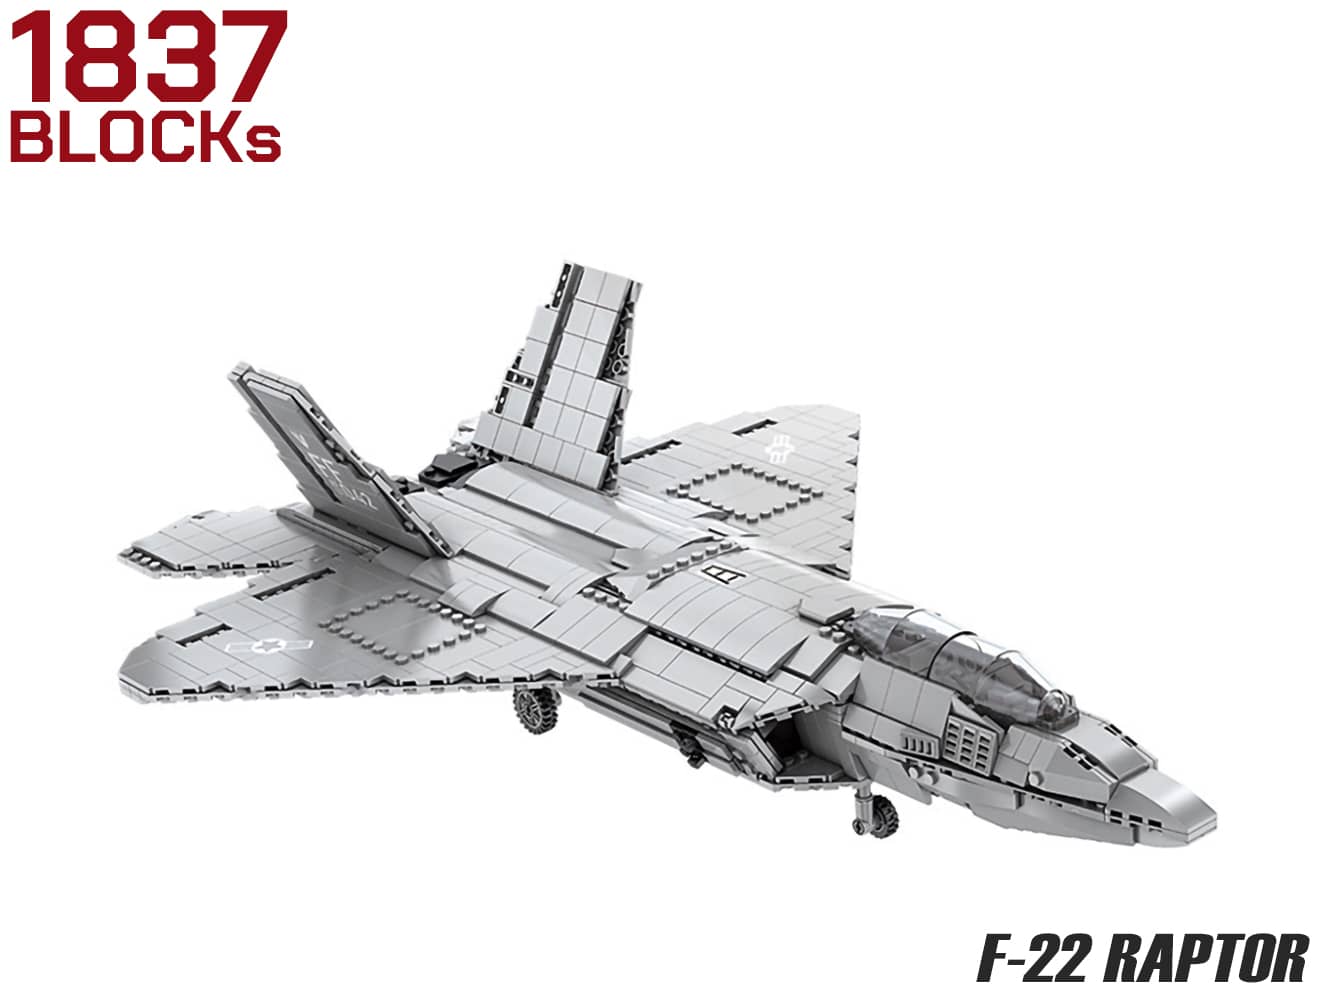 AFM F-22 ラプター 1837Blocks◆ブロック ステルス 世界 最高 クラス 戦闘機 リアル 再現 プレゼント 子供 ミリタリー 知育 玩具 インテリア 組み立て 飾る 作る